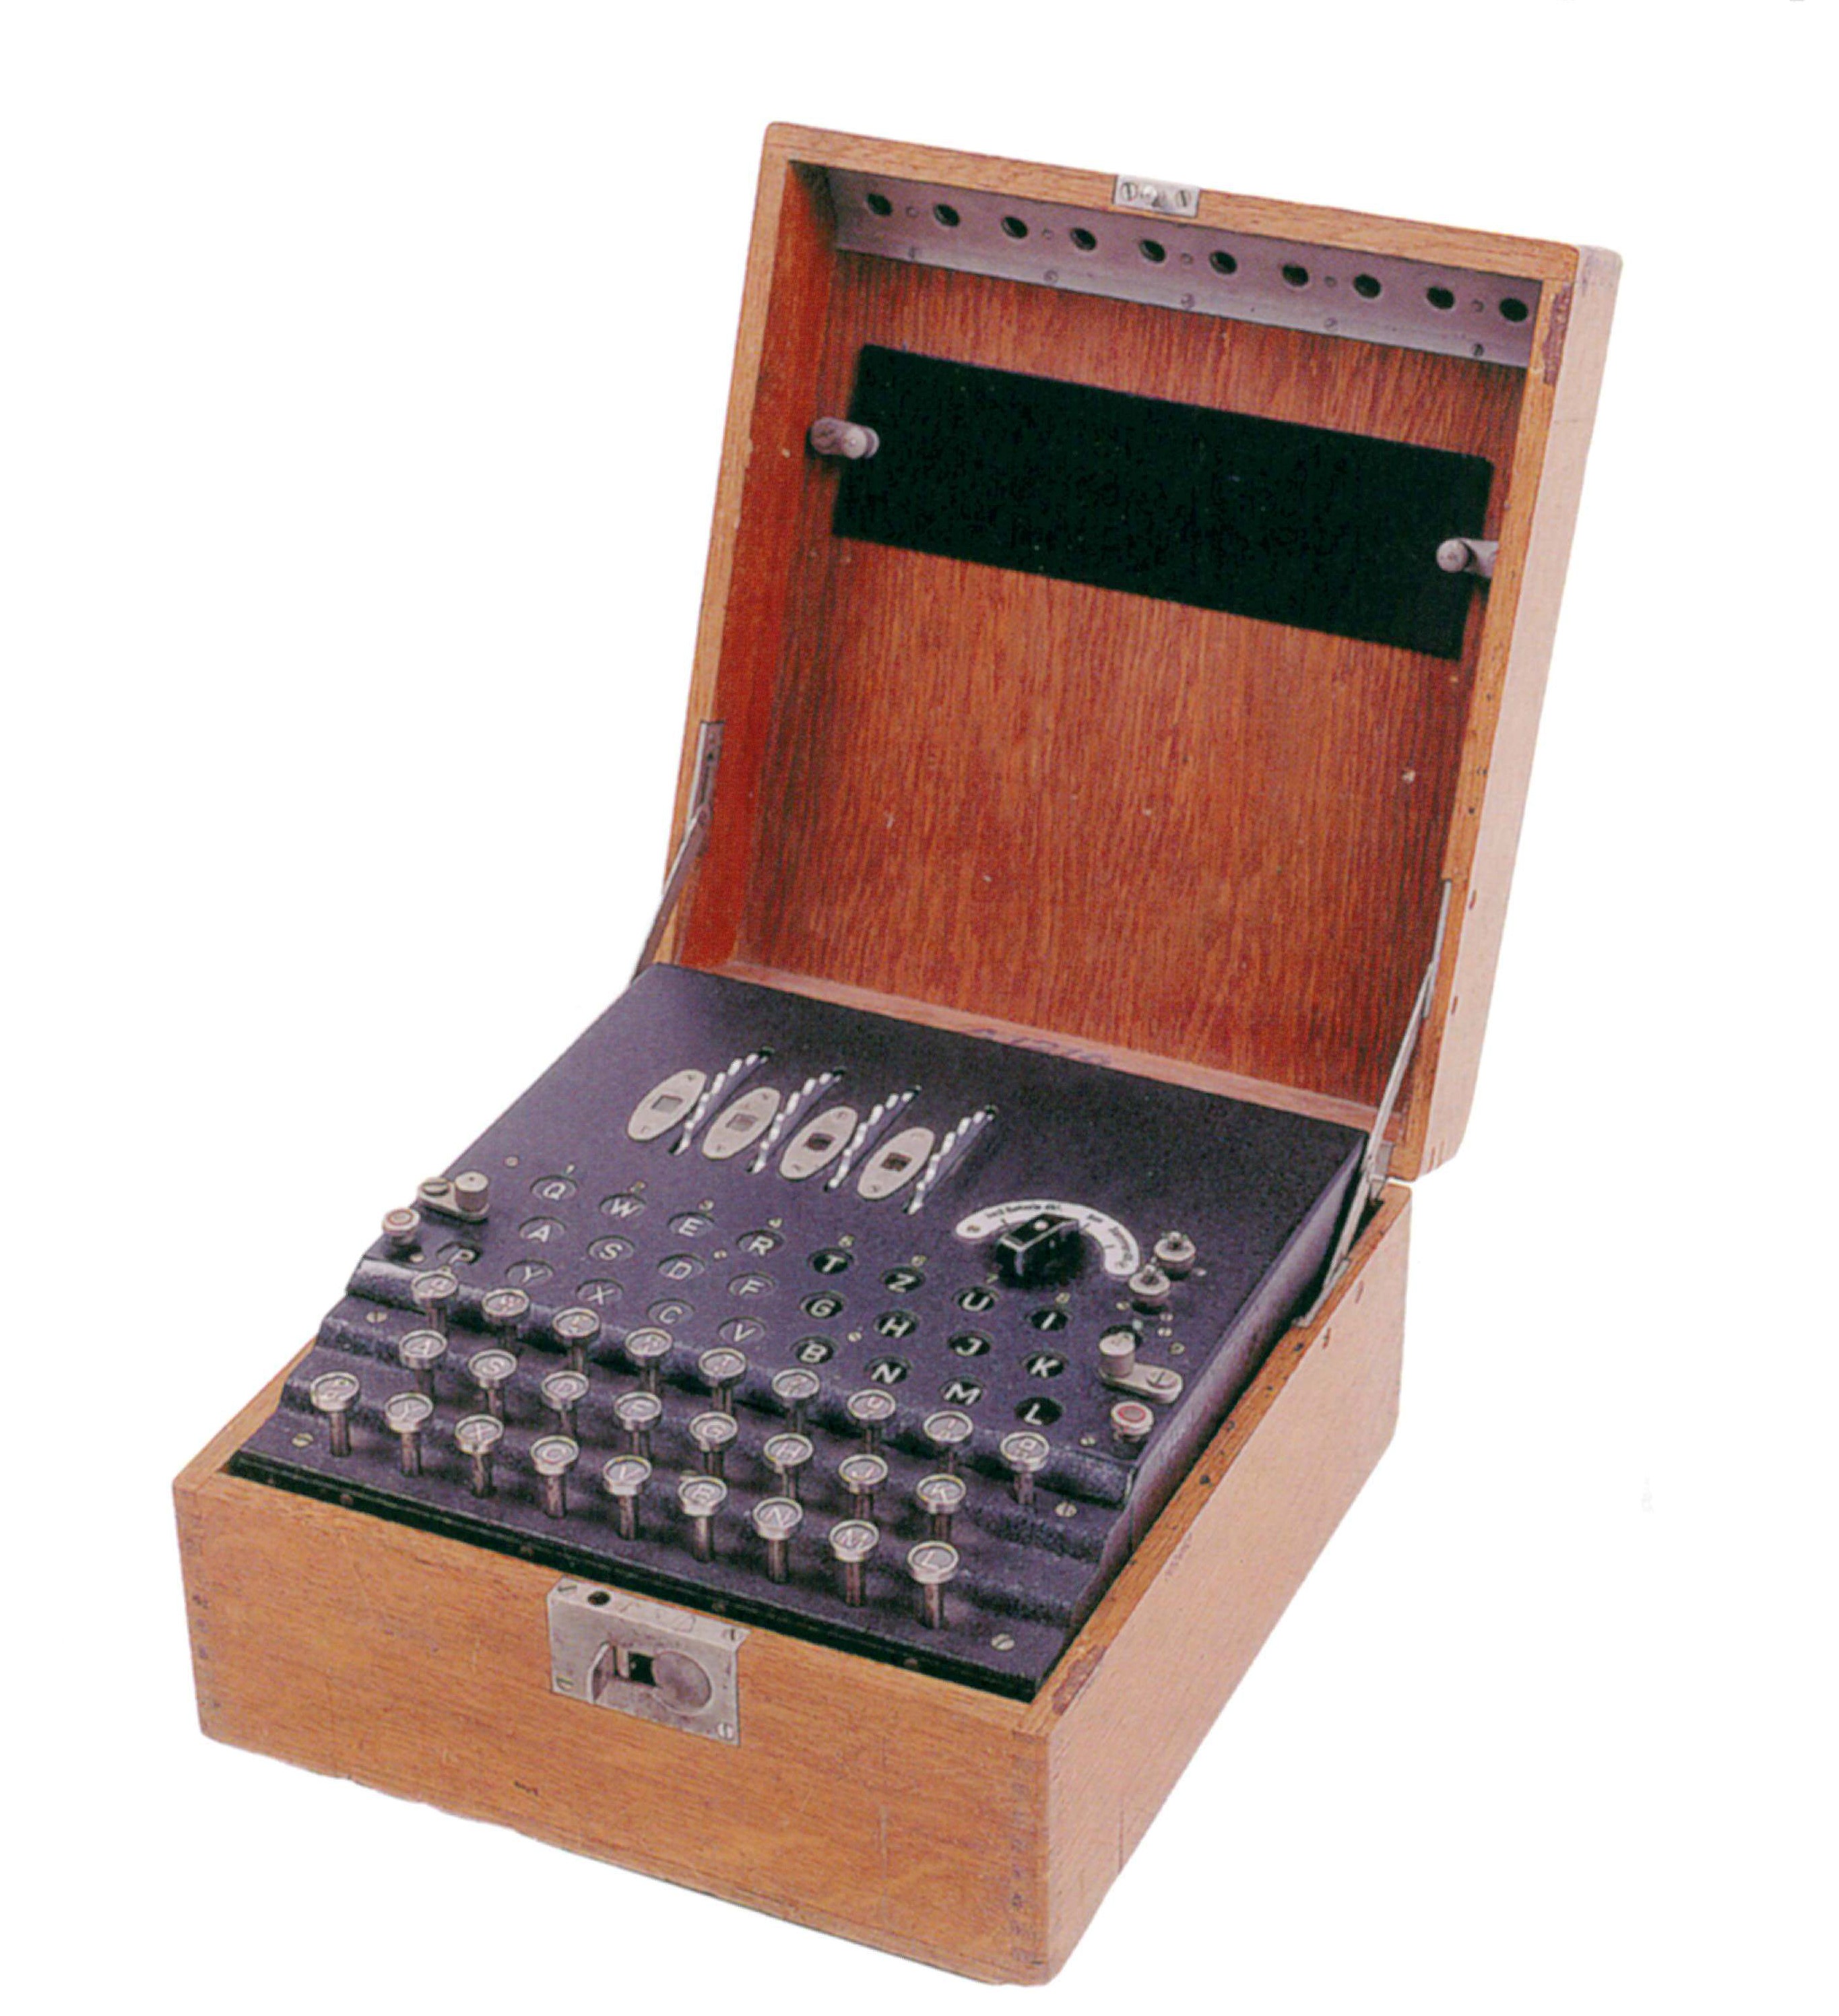 Enigma machine<